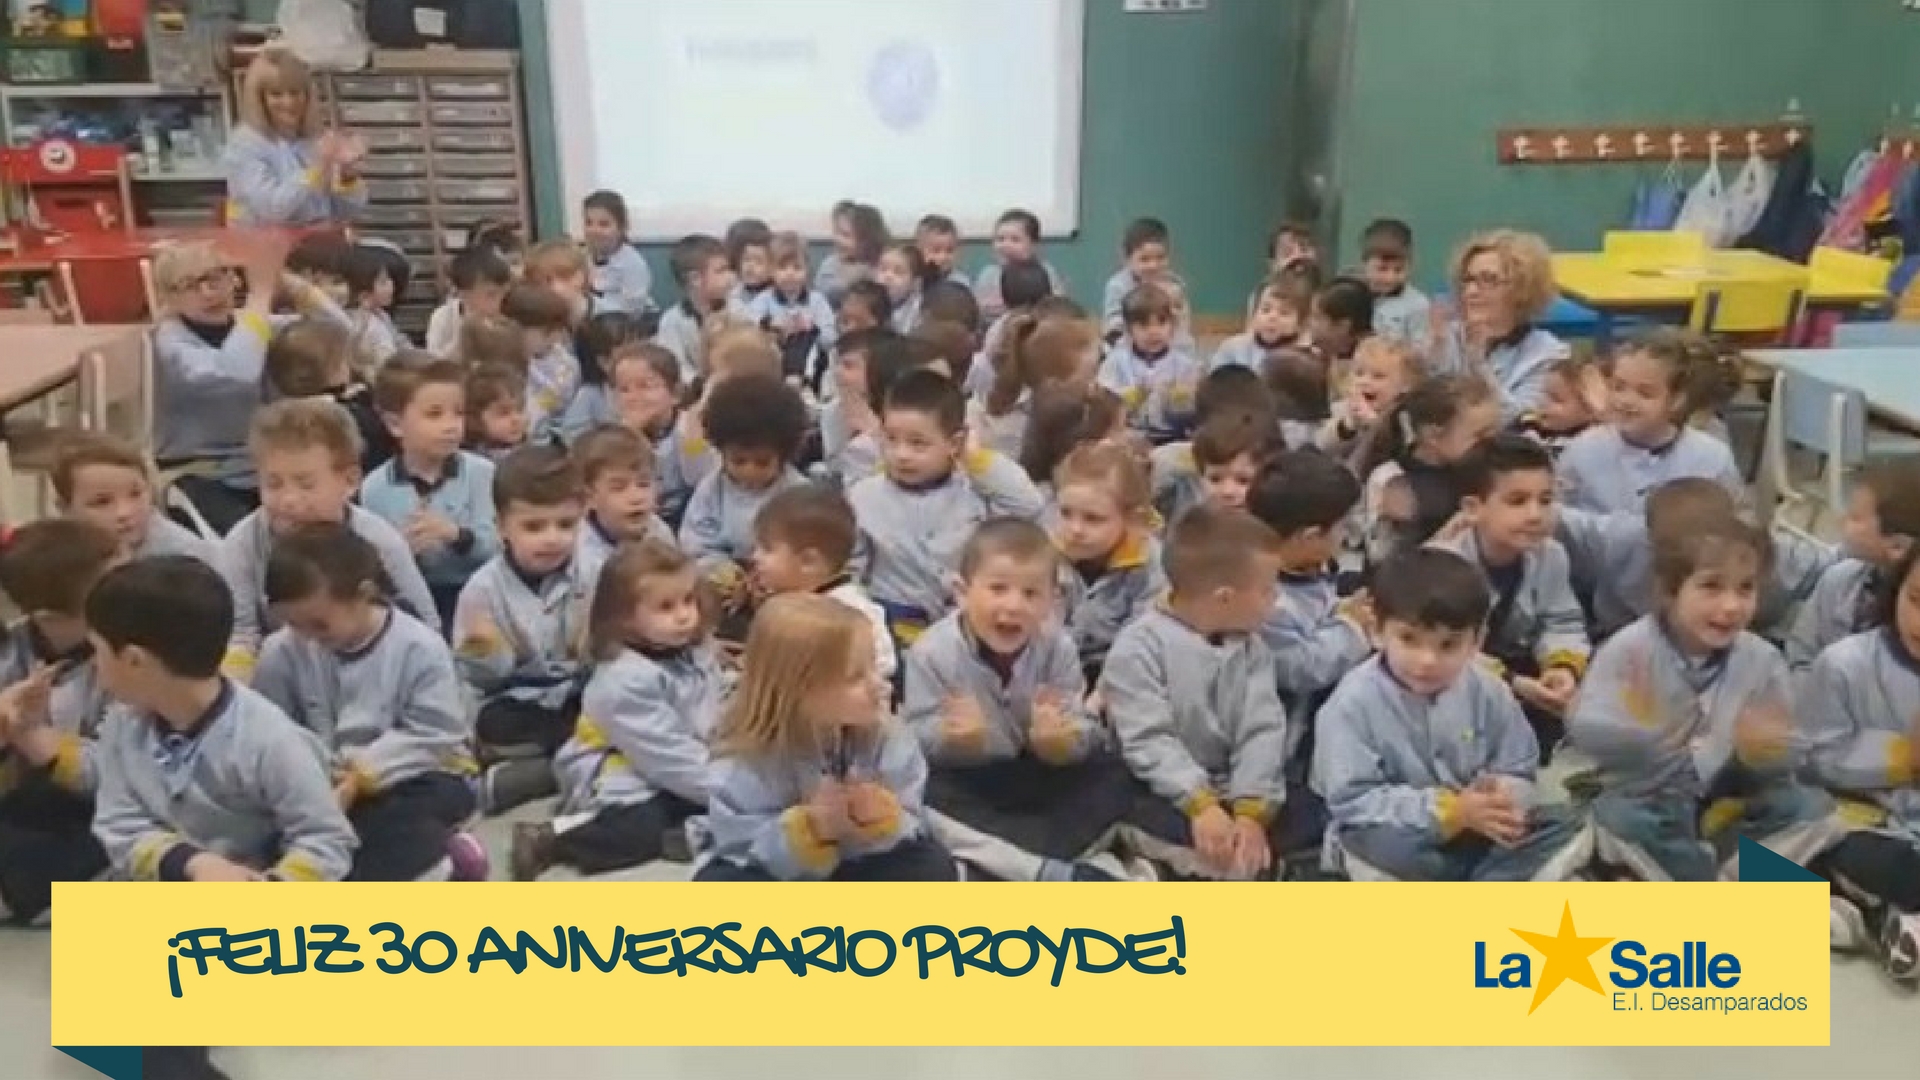 En la Escuela Infantil Desamparados celebran el 30 aniversario de PROYDE